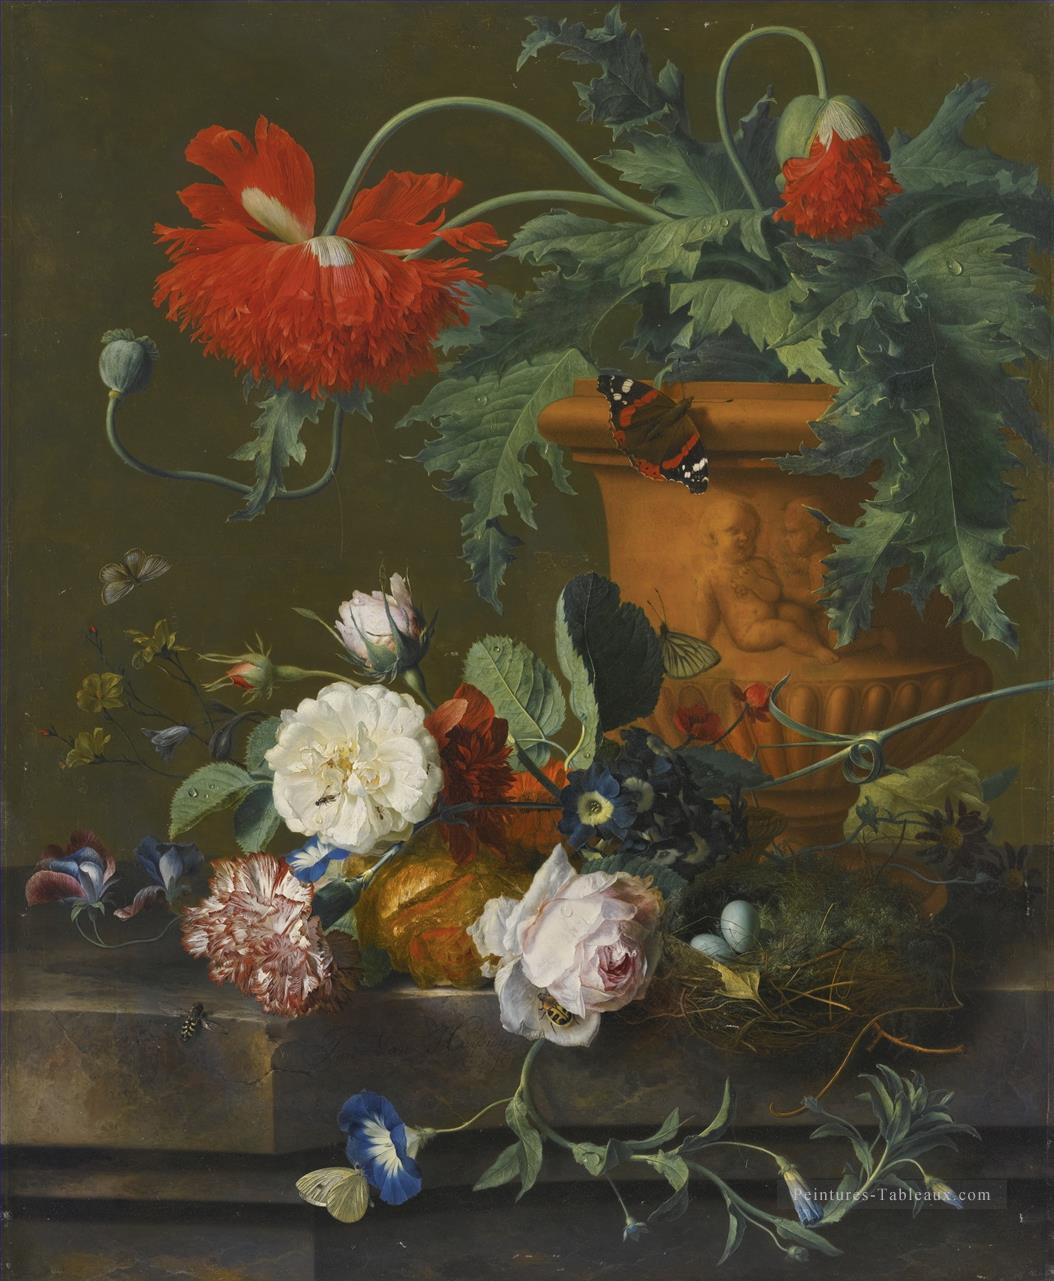 Une nature morte de coquelicots dans un VASE en terre cuite ROSES un oeillet et autres fleurs Jan van Huysum fleurs classiques Peintures à l'huile